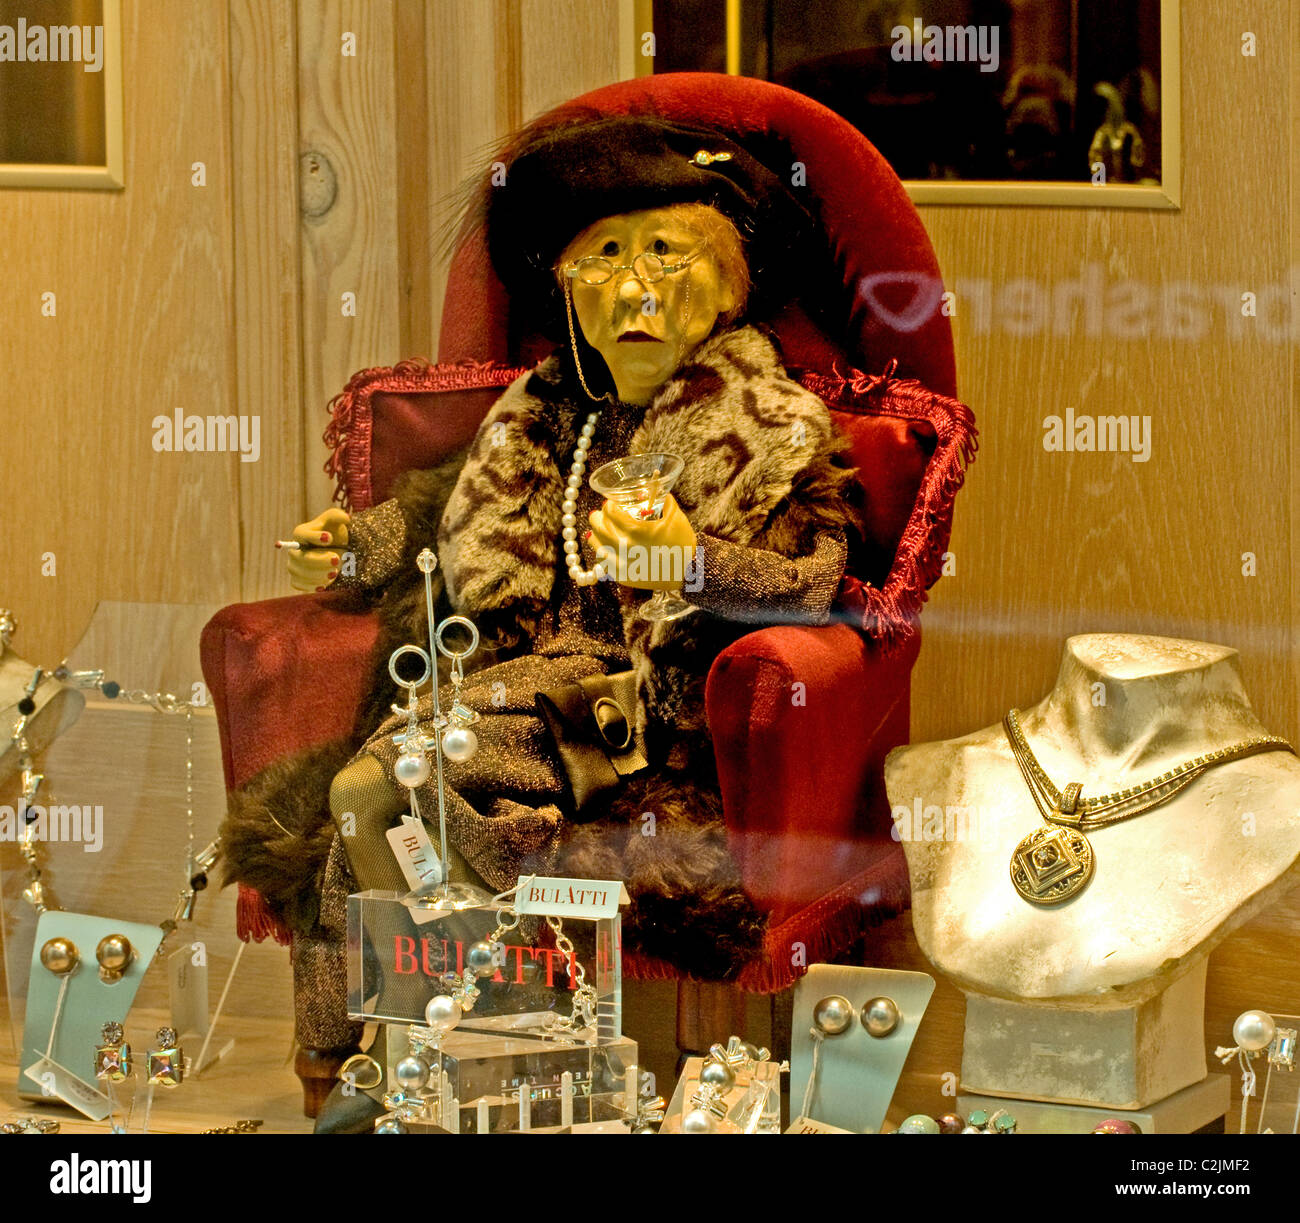 Un modèle de la reine Elizabeth dans une vitrine dans la région de Gloucester (bijoux) ; Königin Elizabeth Puppe als im Schaufenster von Juwelier Banque D'Images